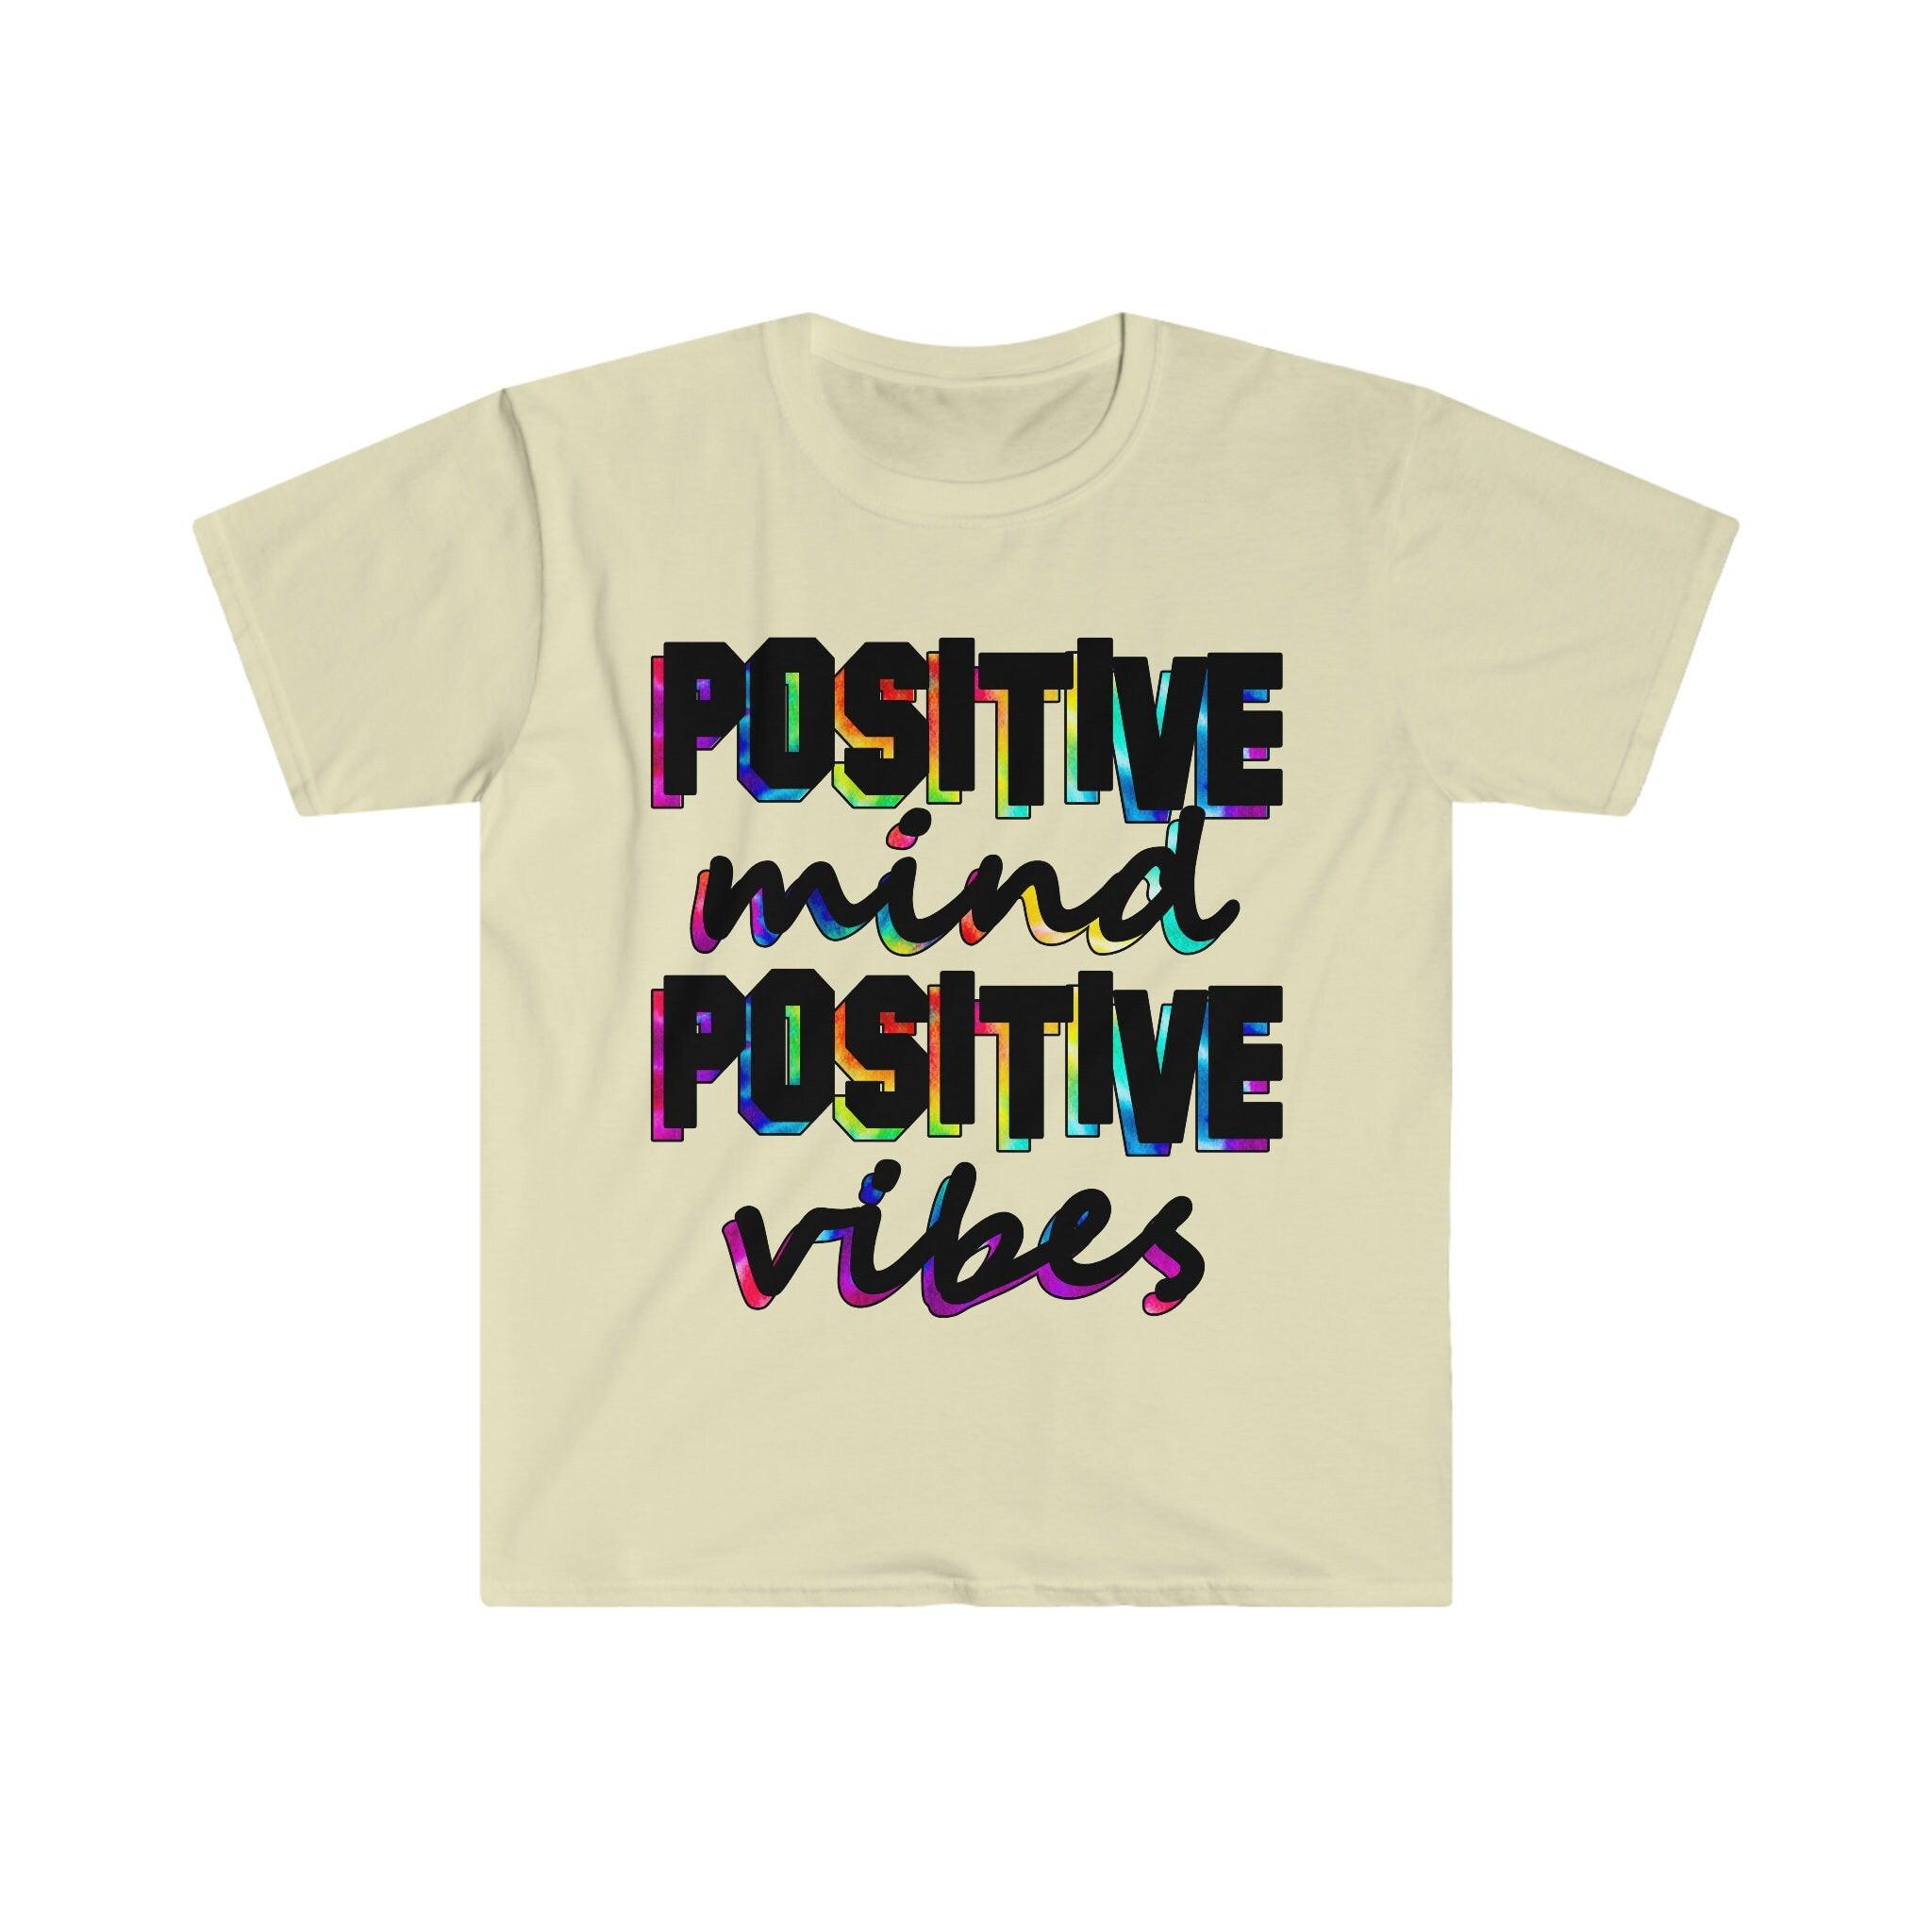 Μπλουζάκι Positive Mind Positive Vibes, Μπλουζάκι με κίνητρα, Εμπνευσμένο πουκάμισο, Μπλουζάκι Positivity - plusminusco.com